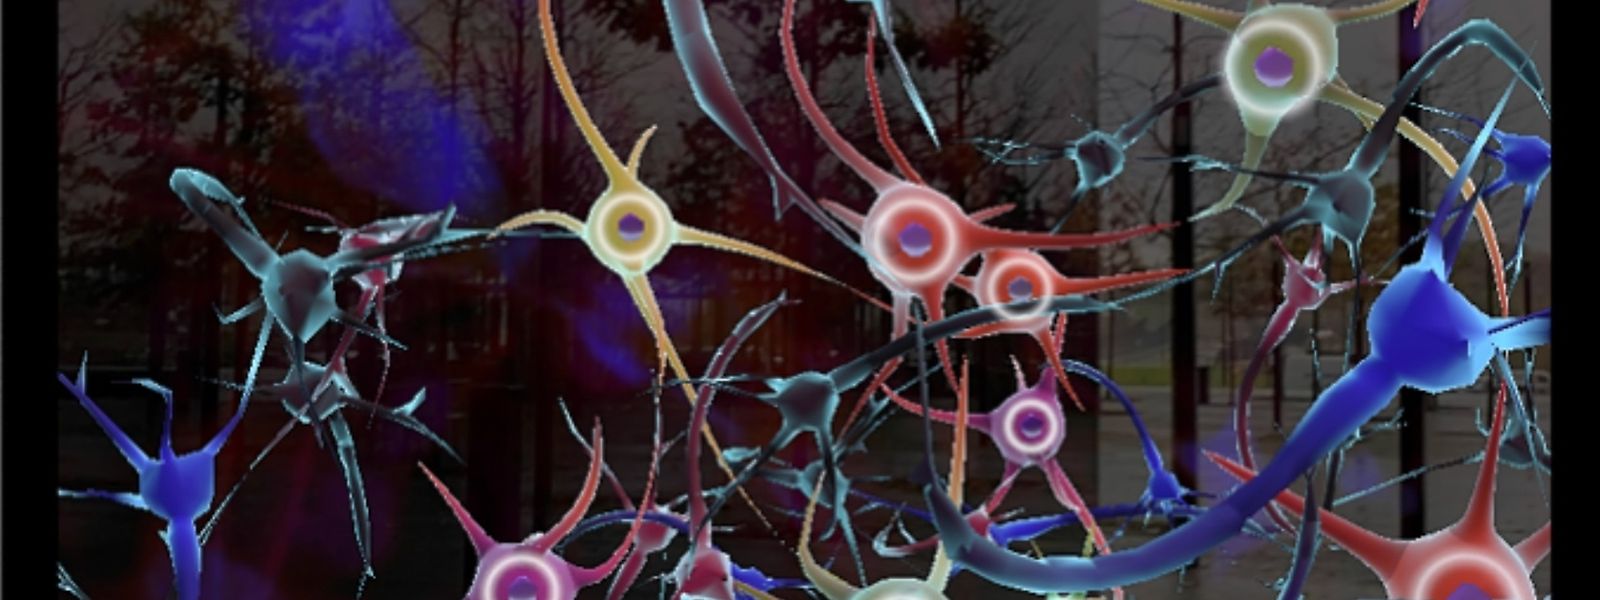 Die App lässt Wissenschaftsbegeisterte in acht unterschiedliche Themenwelten eintauchen. In der hier gezeigten Grafik werden die Neuronen im menschlichen Gehirn dargestellt. 